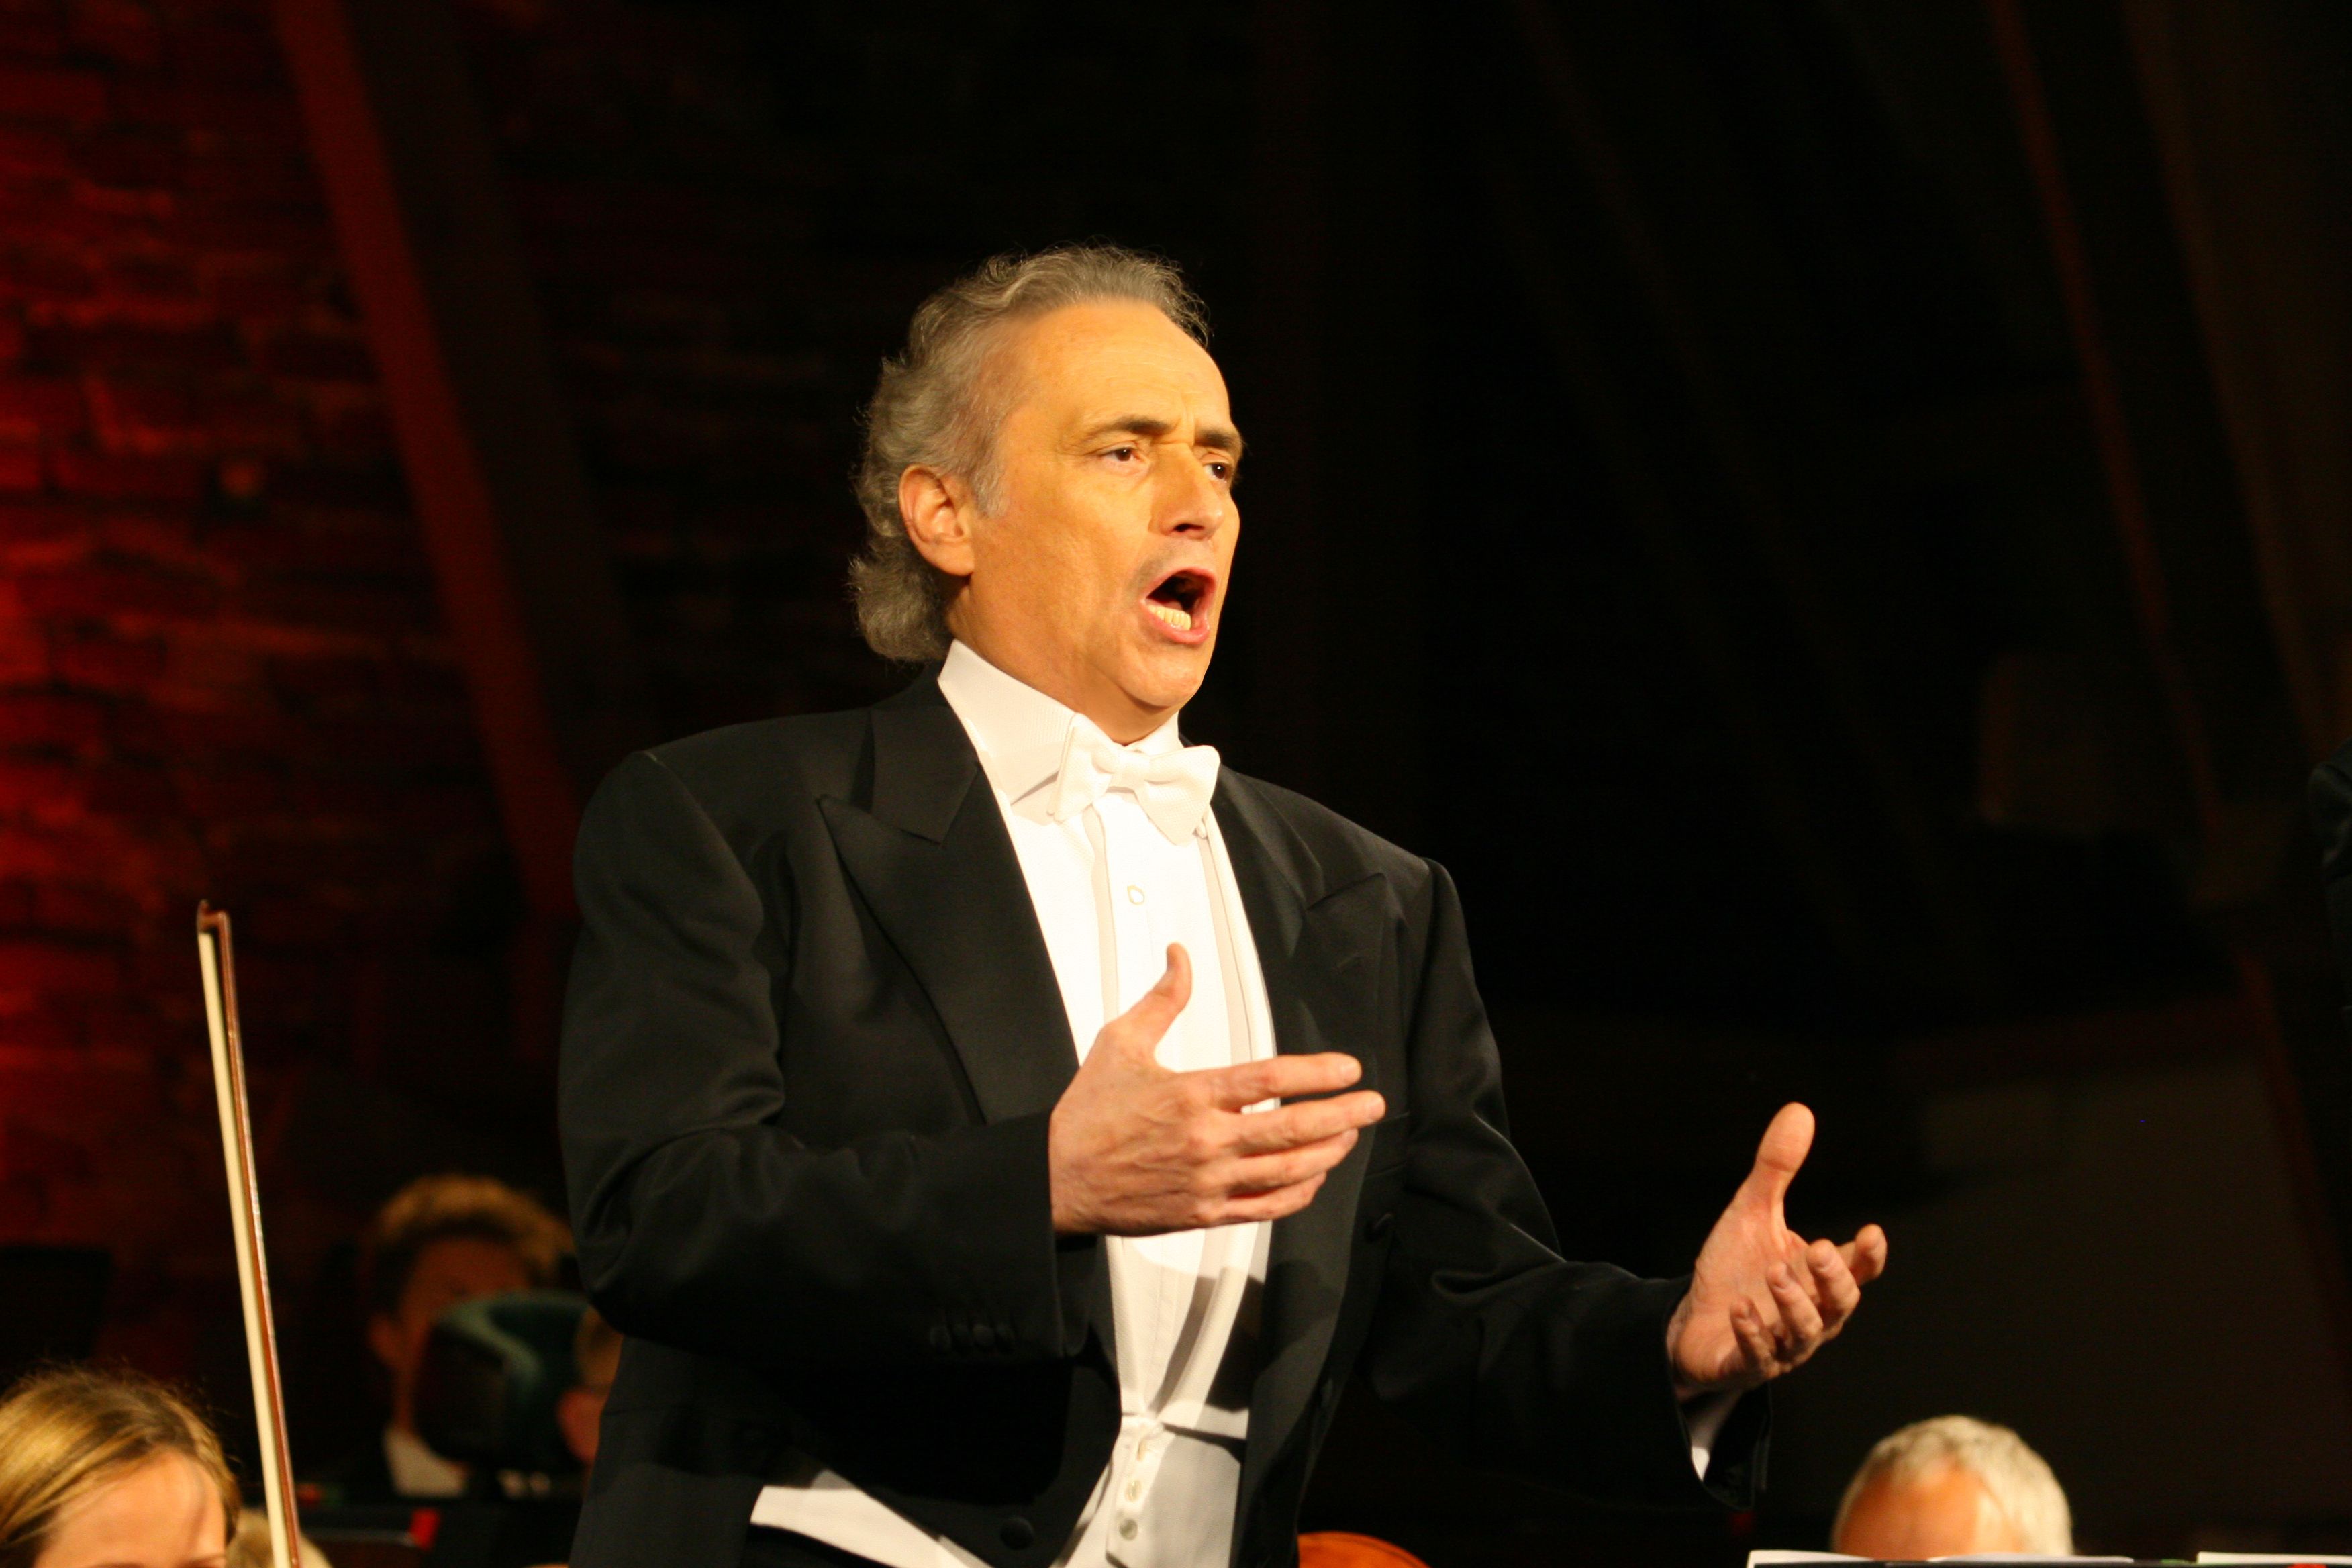 El tenor español José Carreras cantará en Santiago